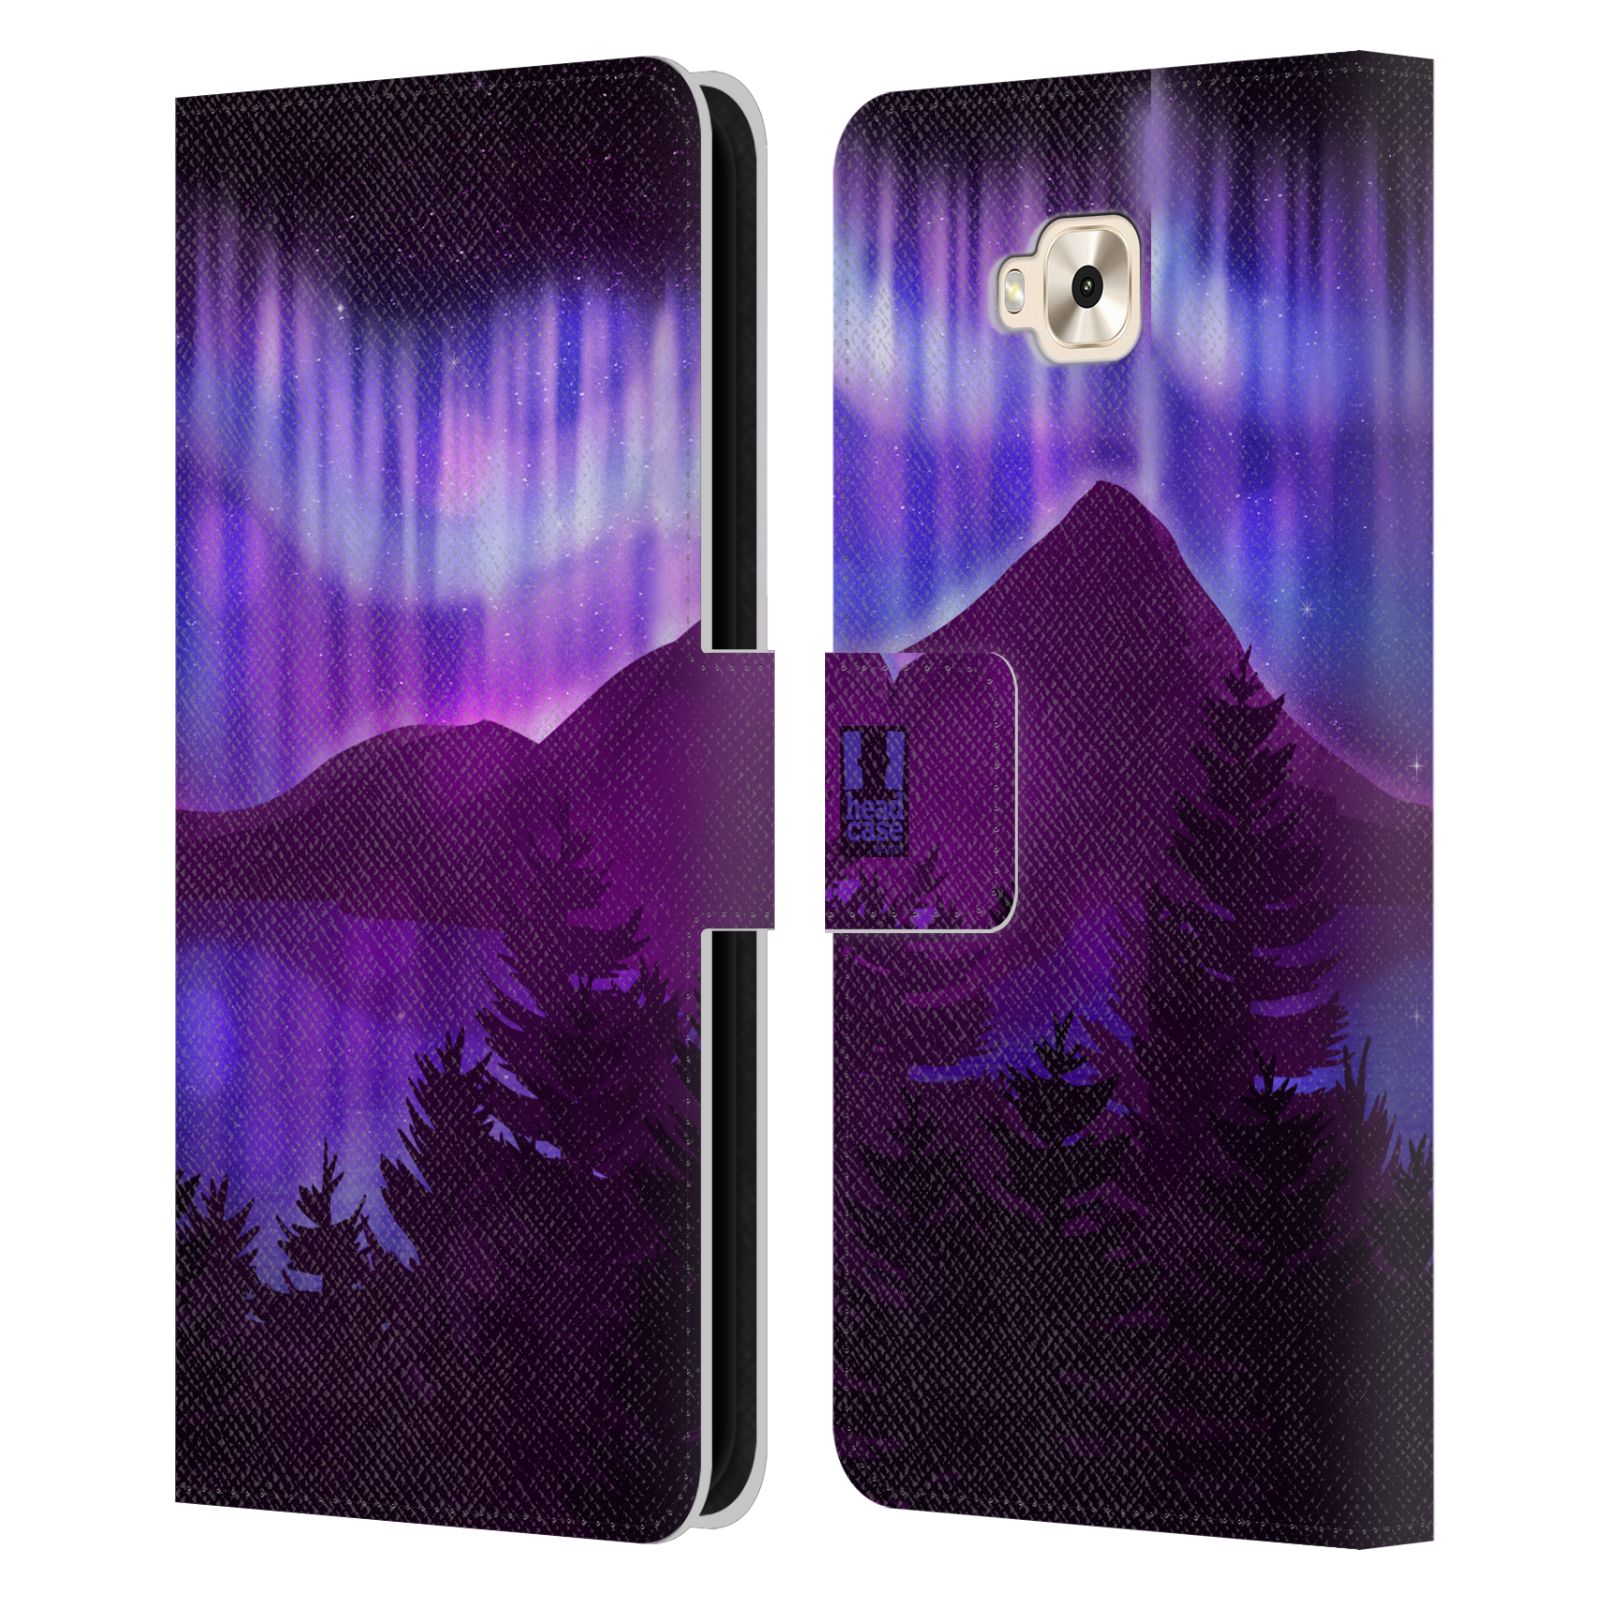 Pouzdro na mobil Asus Zenfone 4 Selfie ZD553KL  - HEAD CASE - Hory a lesy fialový odstín